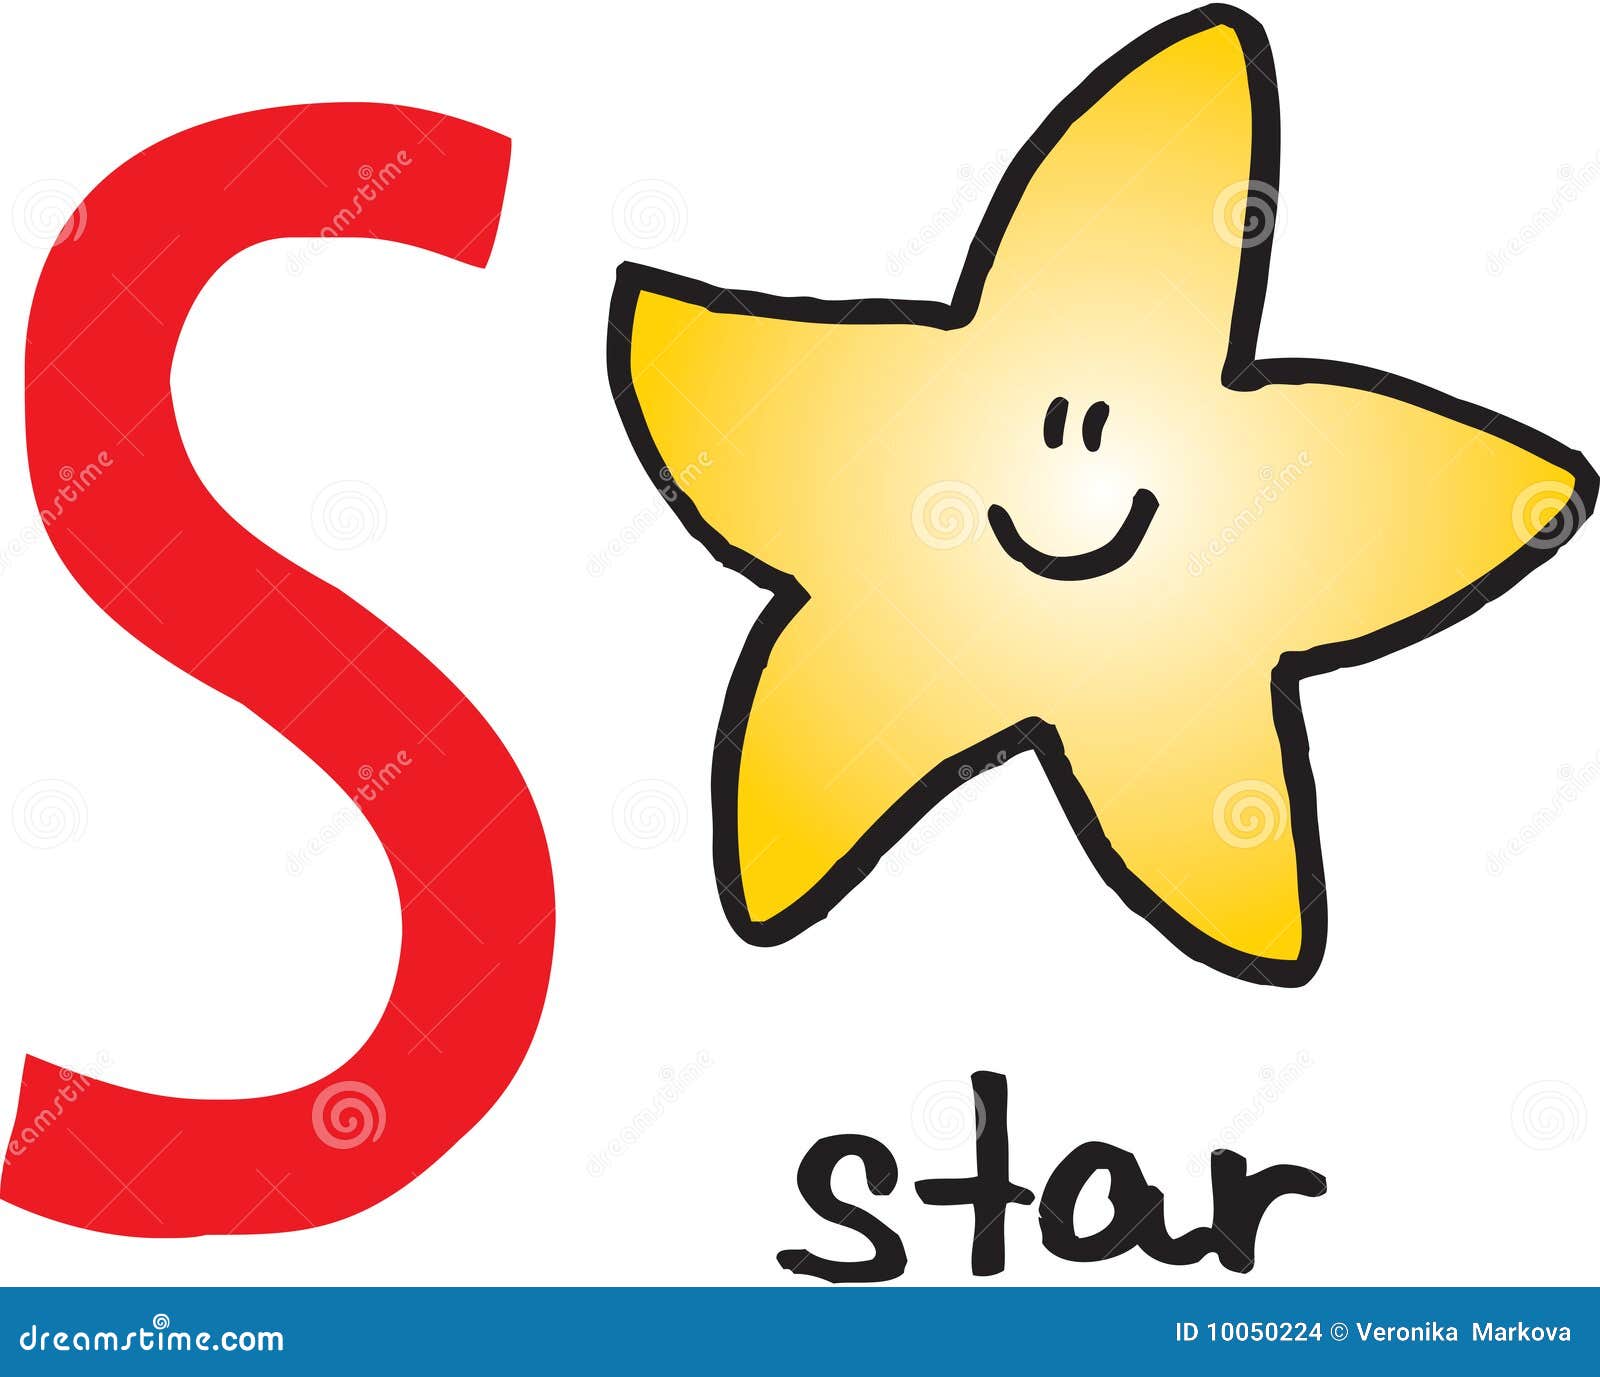 Как переводится с английского star. Звезда на английском. Звезда и буква s. Буквы со звездами. Star картинка английский.